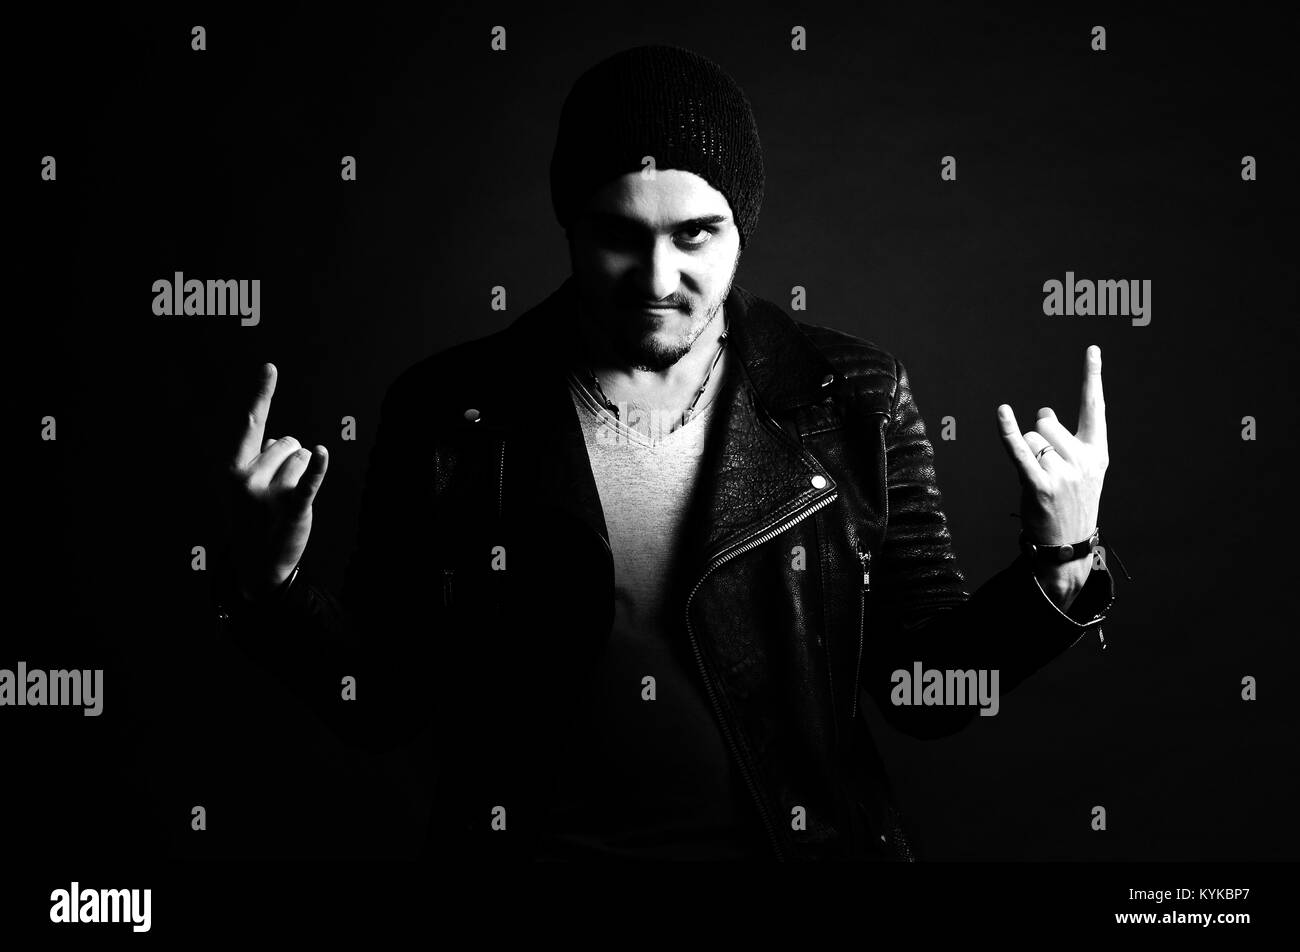 Chanteur Rock portrait, avec veste en cuir et une Cool attitude on black background, studio shot Banque D'Images